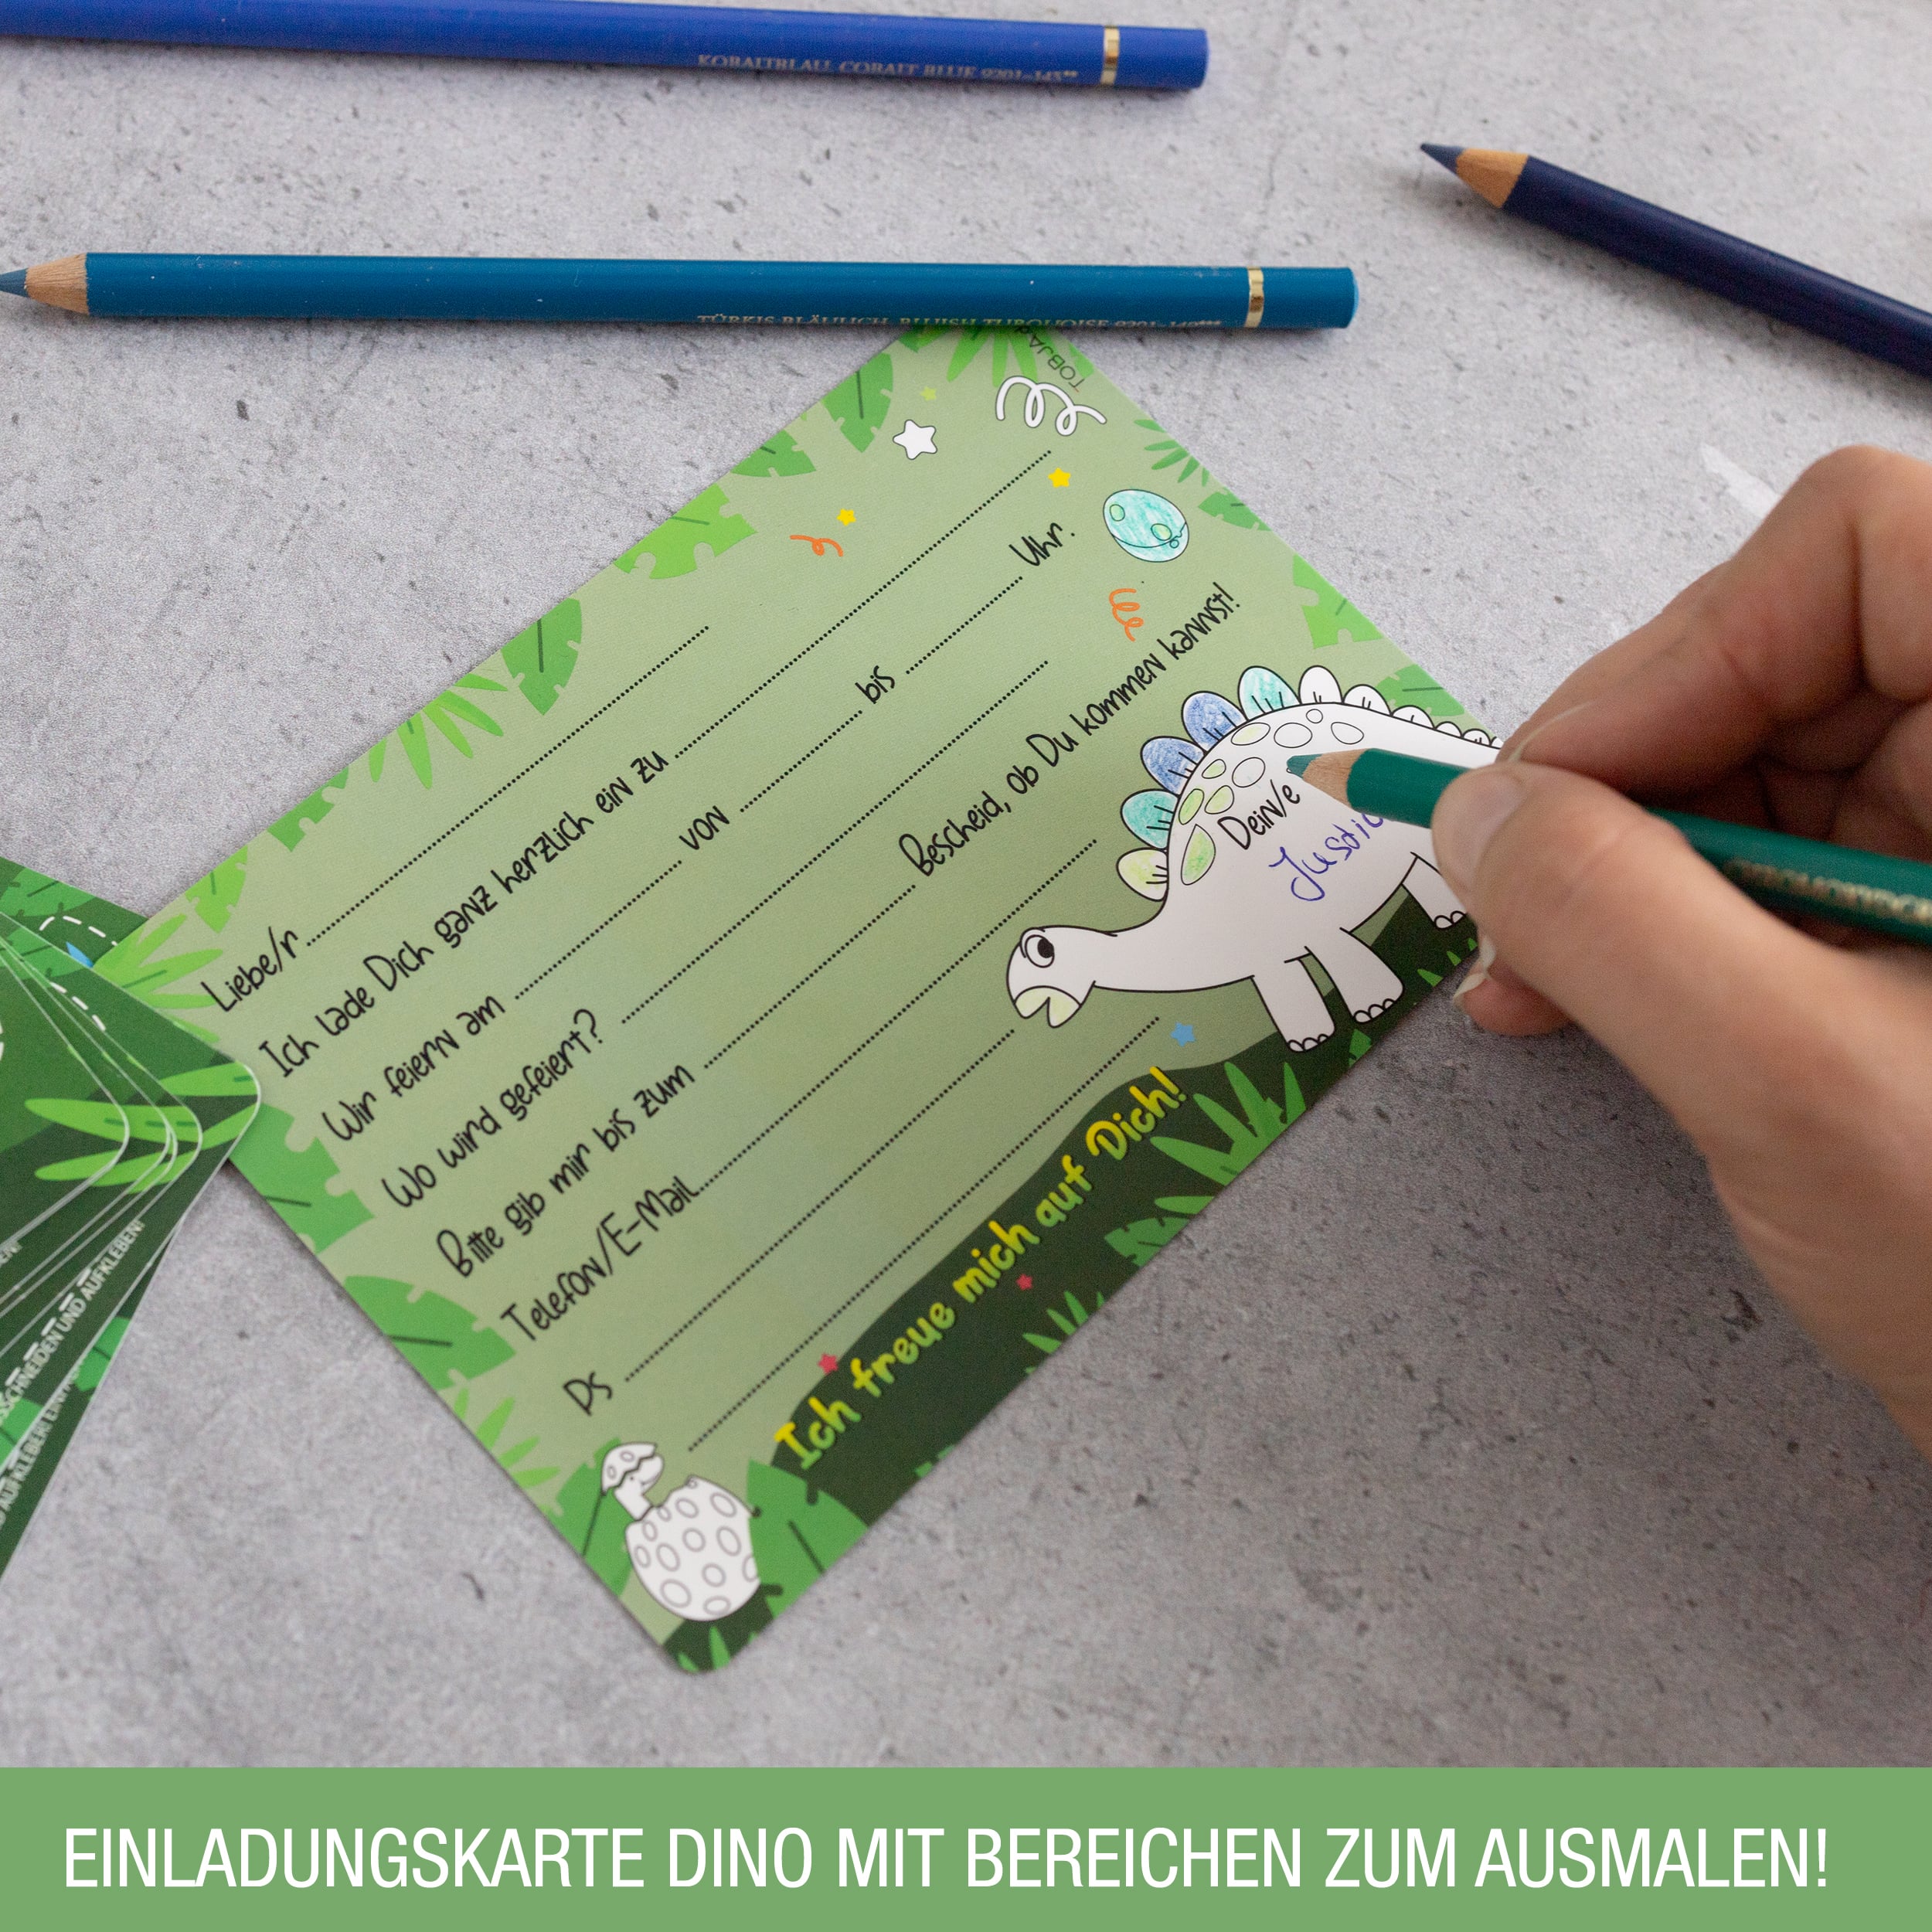 12 Einladungskarten inkl. Umschläge "Dino Party"